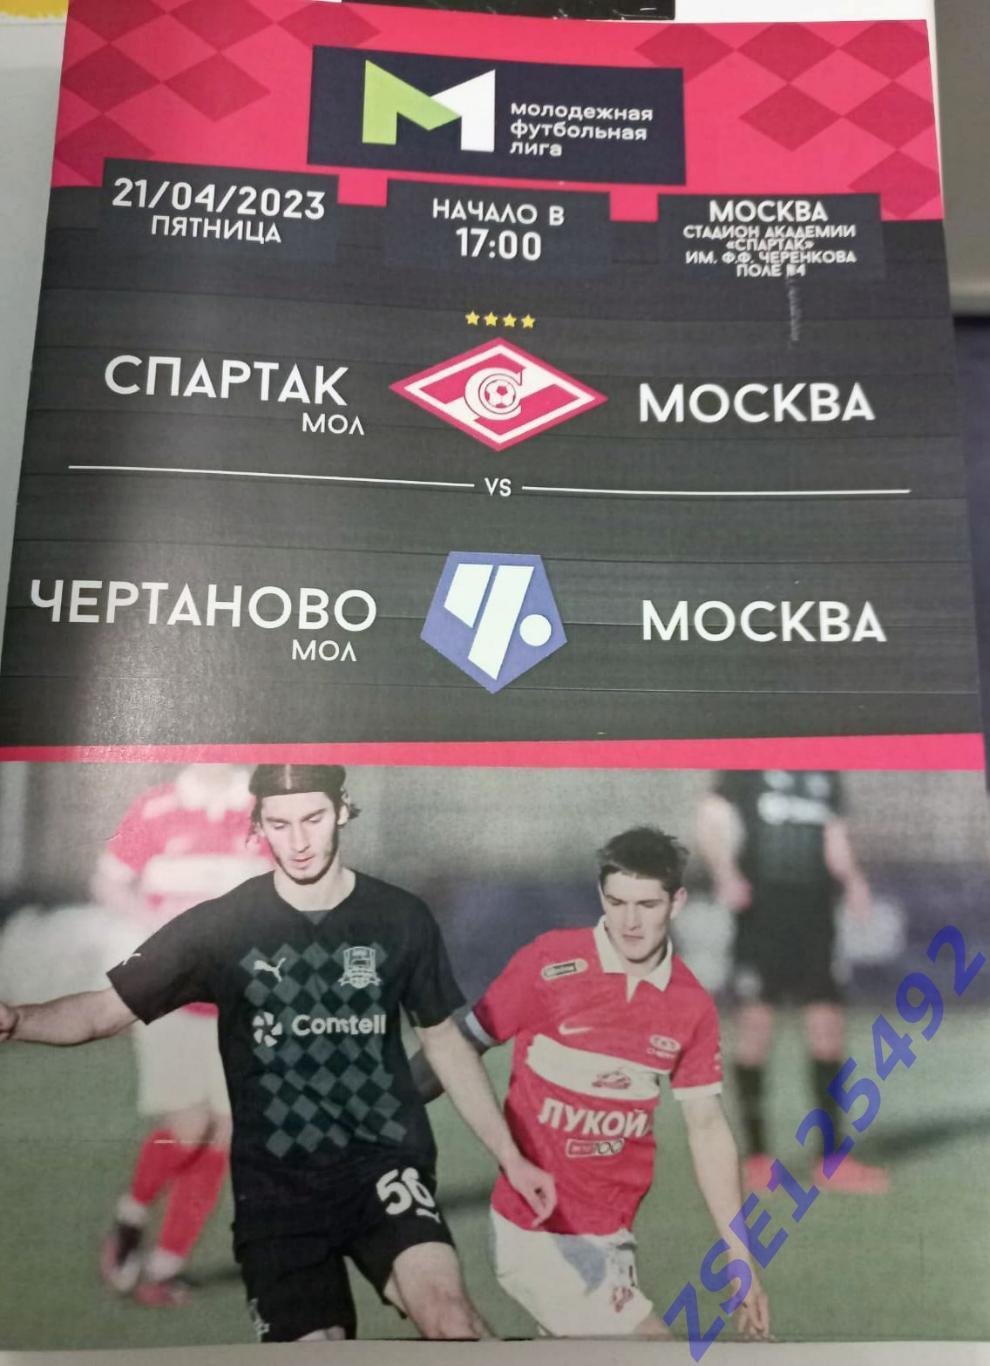 МФЛ 2022/23 Спартак-мол. (Москва) - Чертаново-мол. (Москва) 21.04.2023